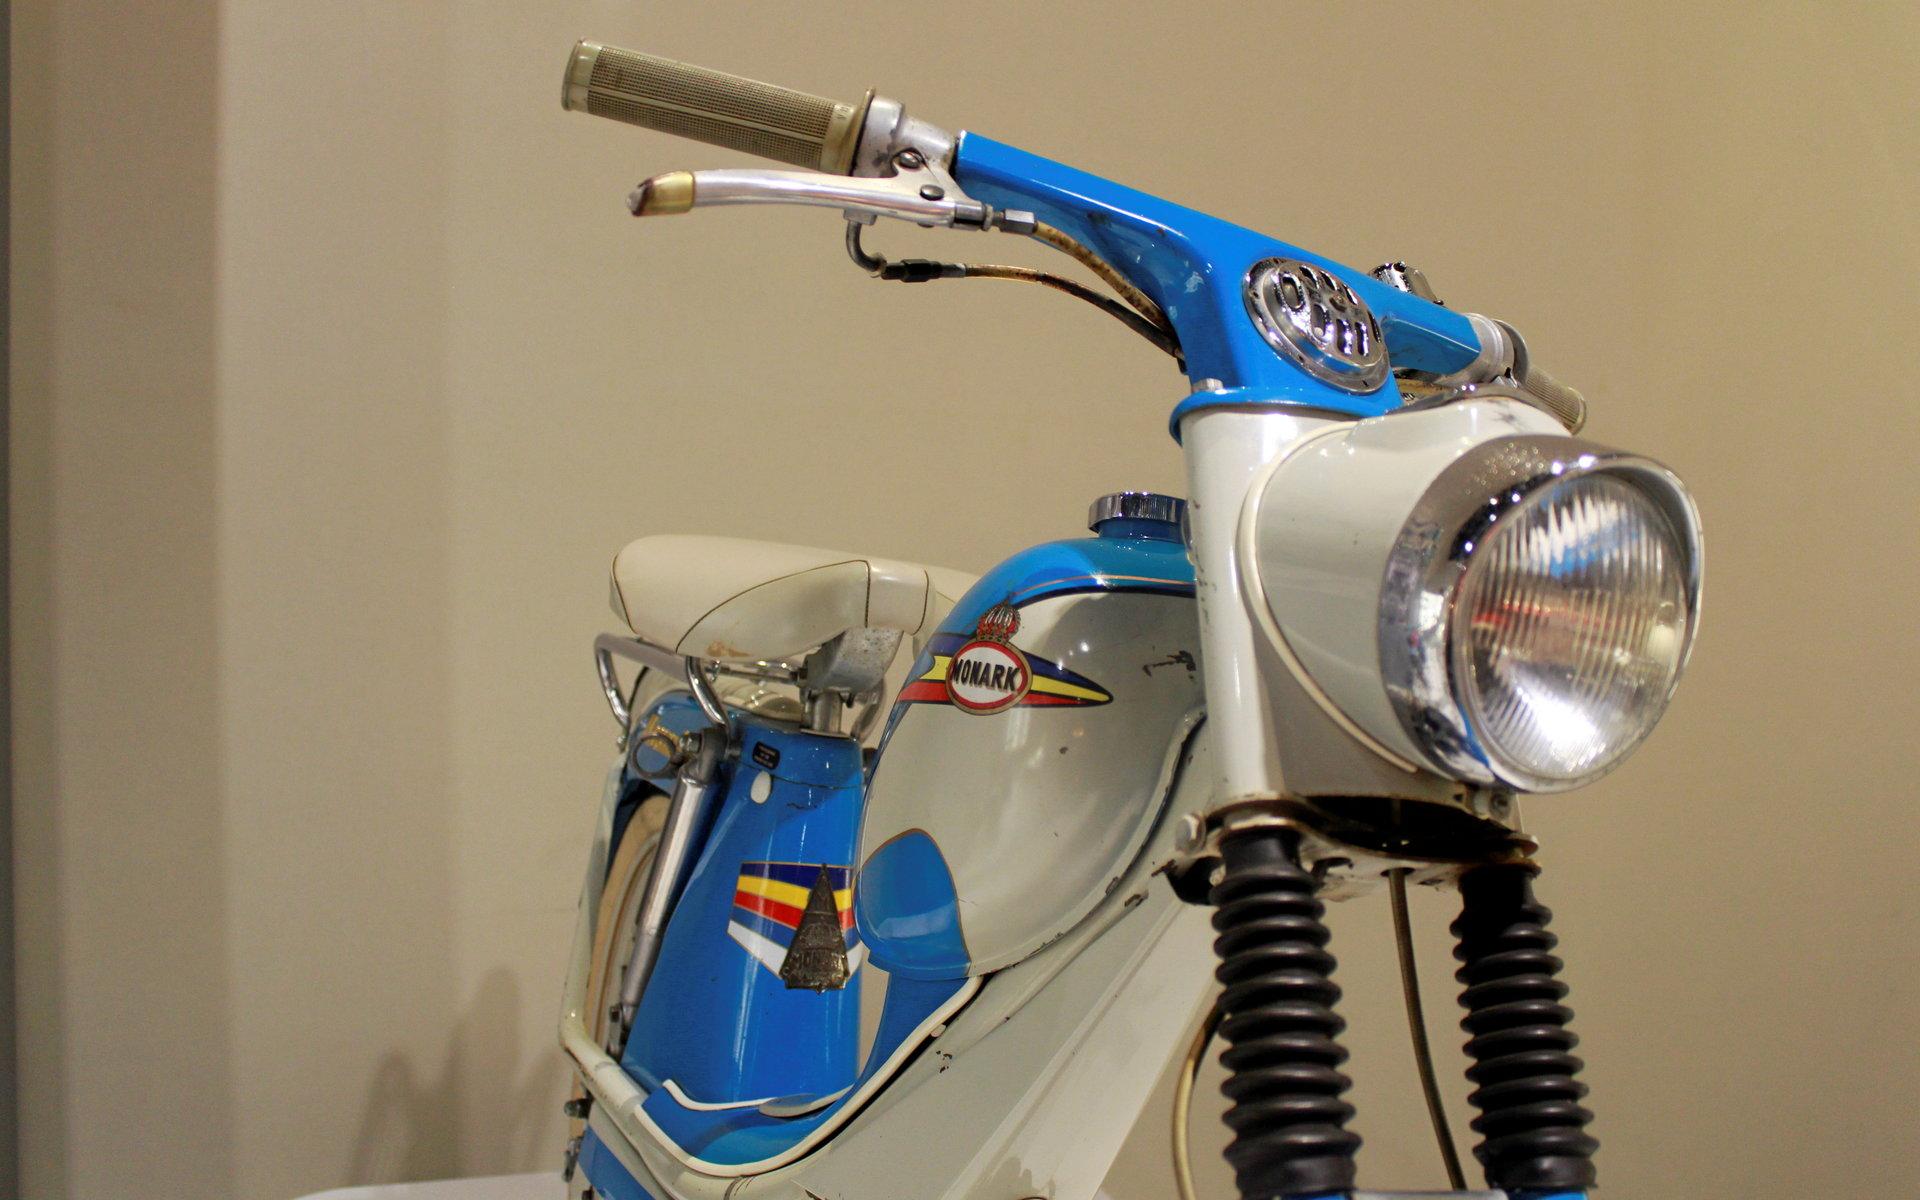 26/11/-23/12: Alla som gillar mopeder kan få sitt lystmäte på Saabs bilmuseum i Trollhättan den närmaste månaden. Där pågår sedan några dagar utställningen Mopeden - en svensk designhistoria.